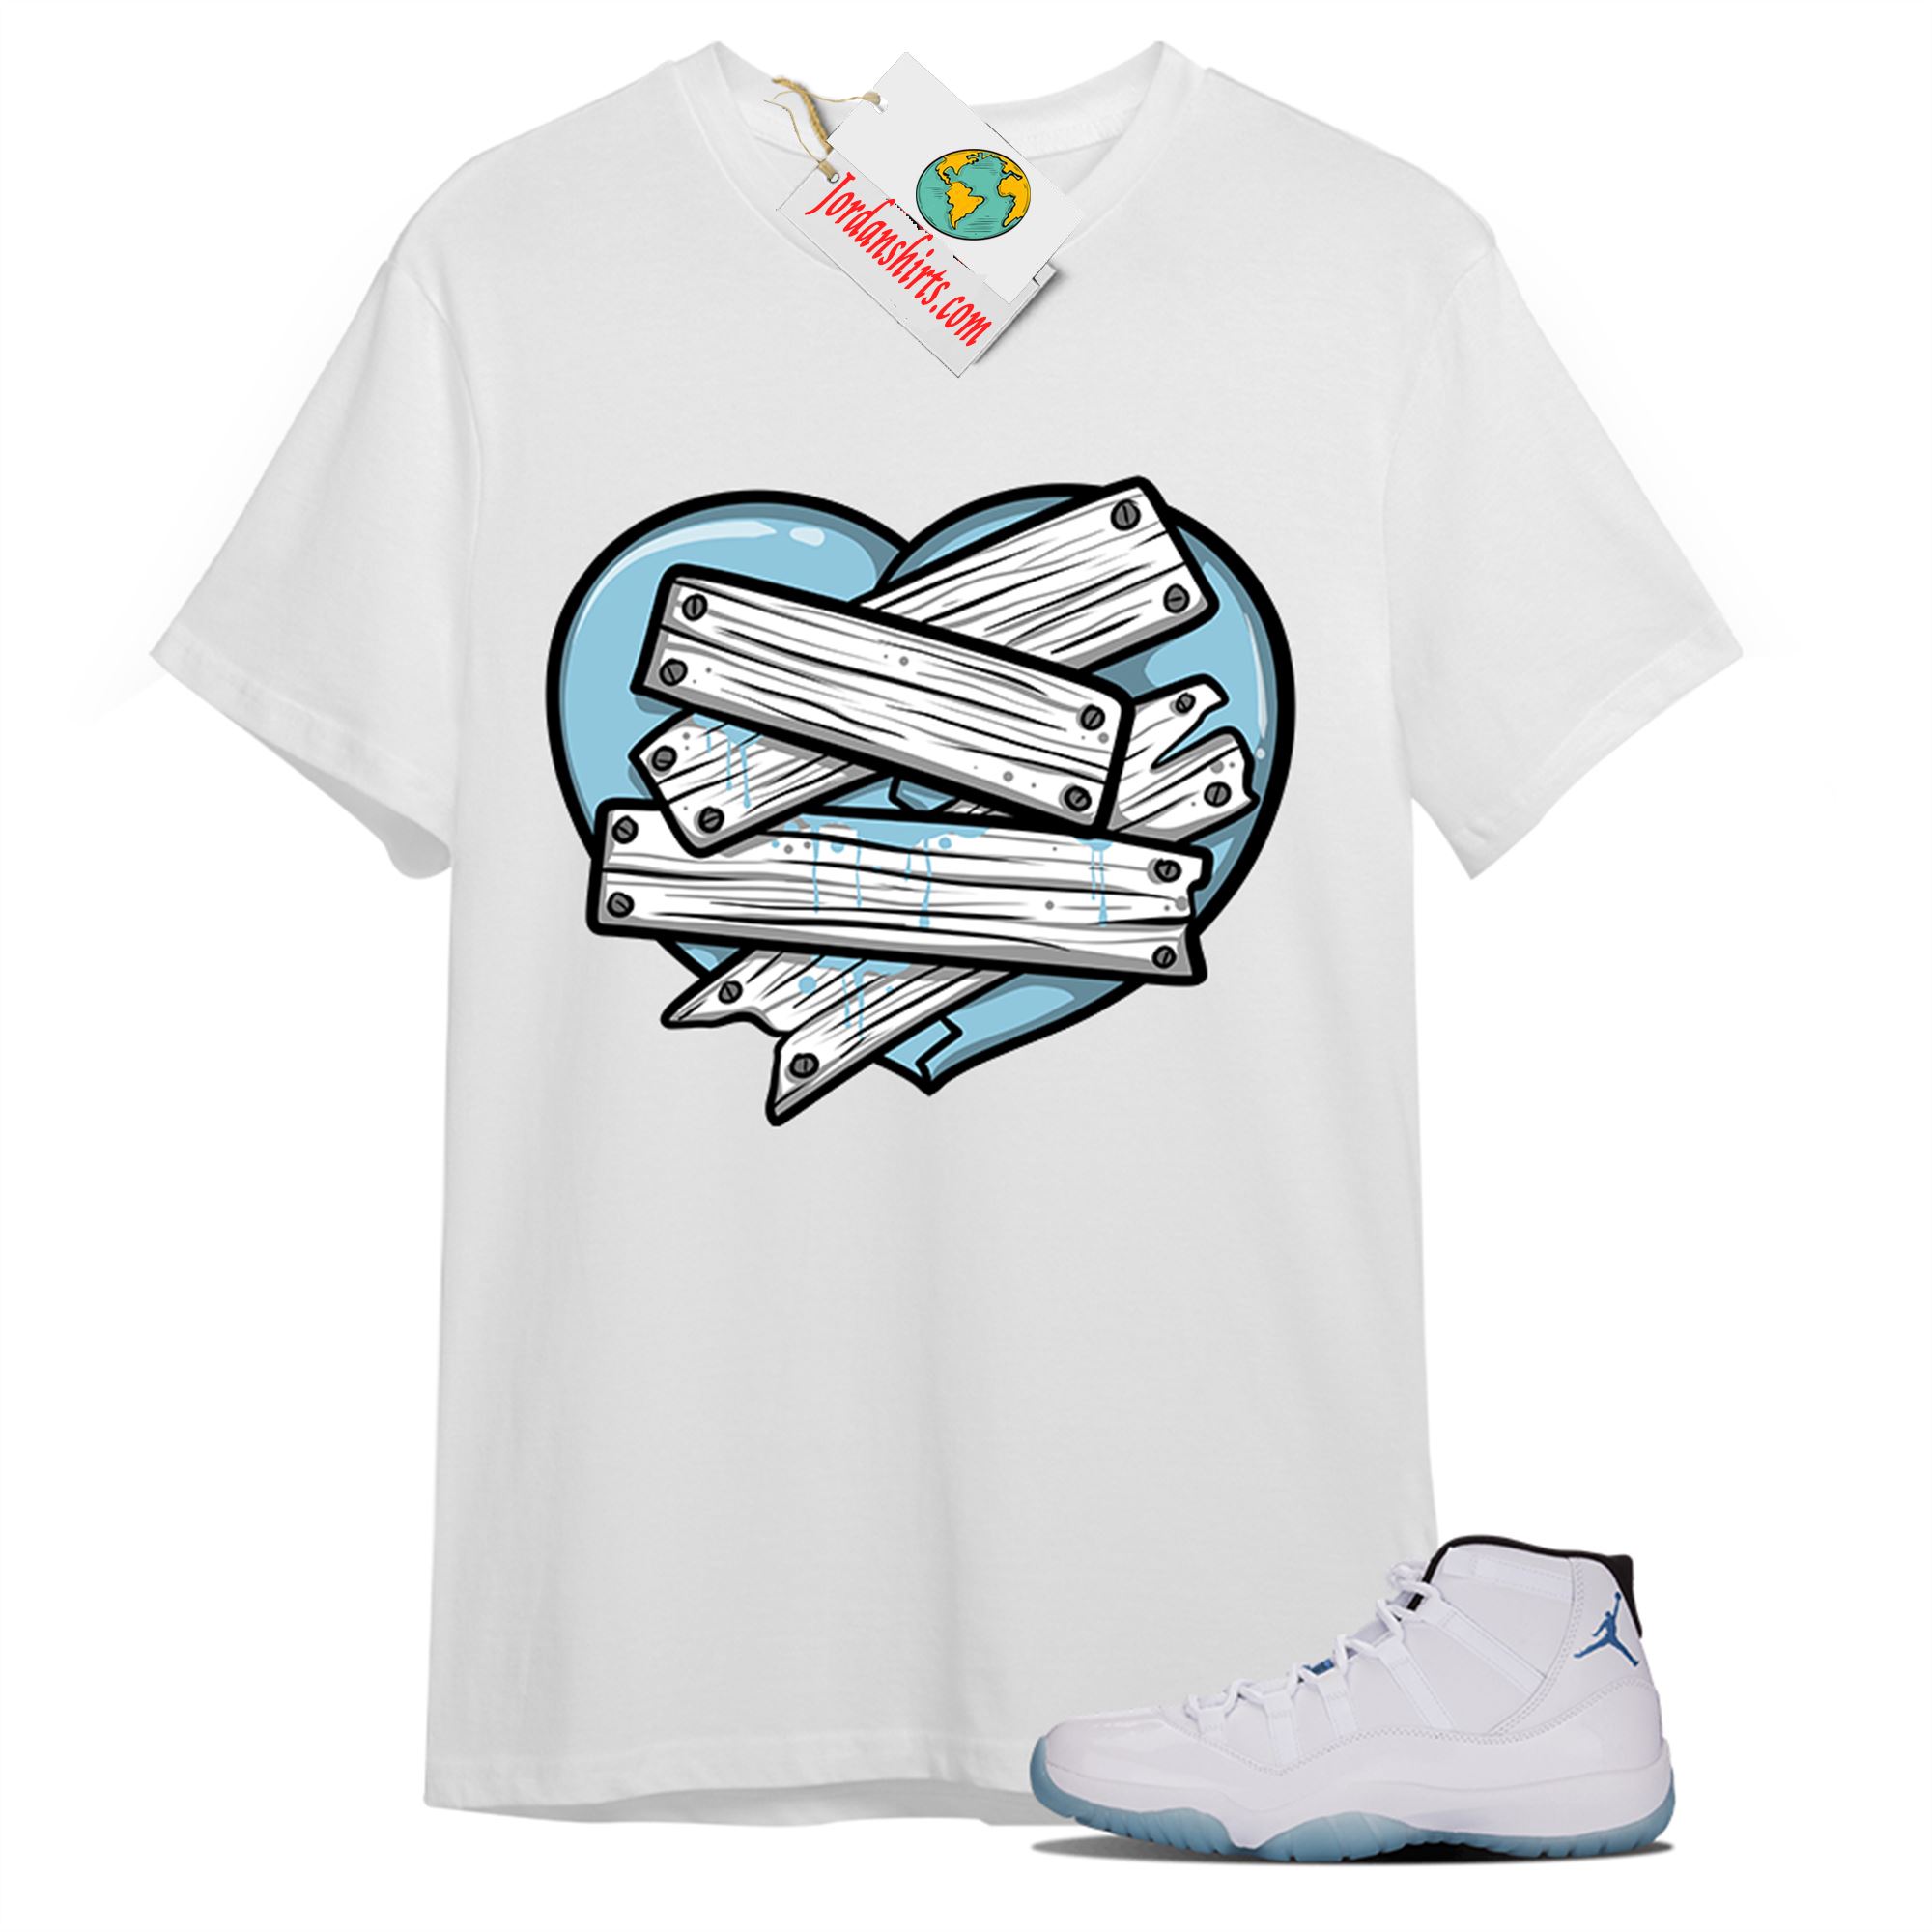 Jordan 11 Shirt, Patch Love Broken Heart White T-shirt Air Jordan 11 Legend Blue 11s Full Size Up To 5xl